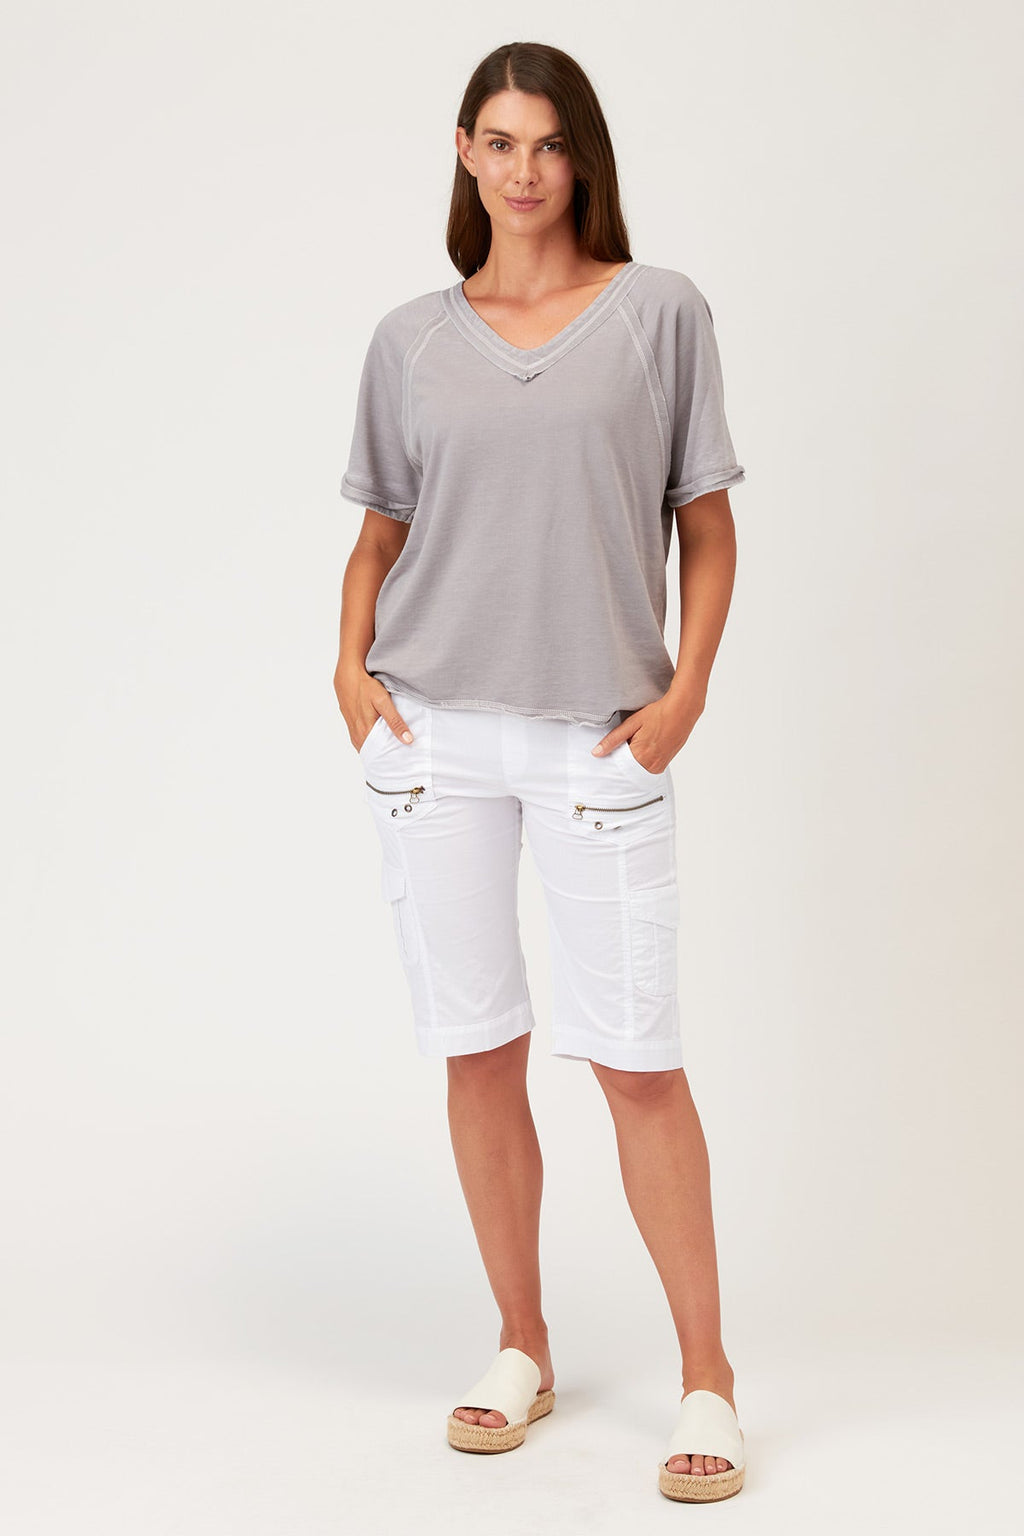 Zola Bermuda Short in White – XCVI